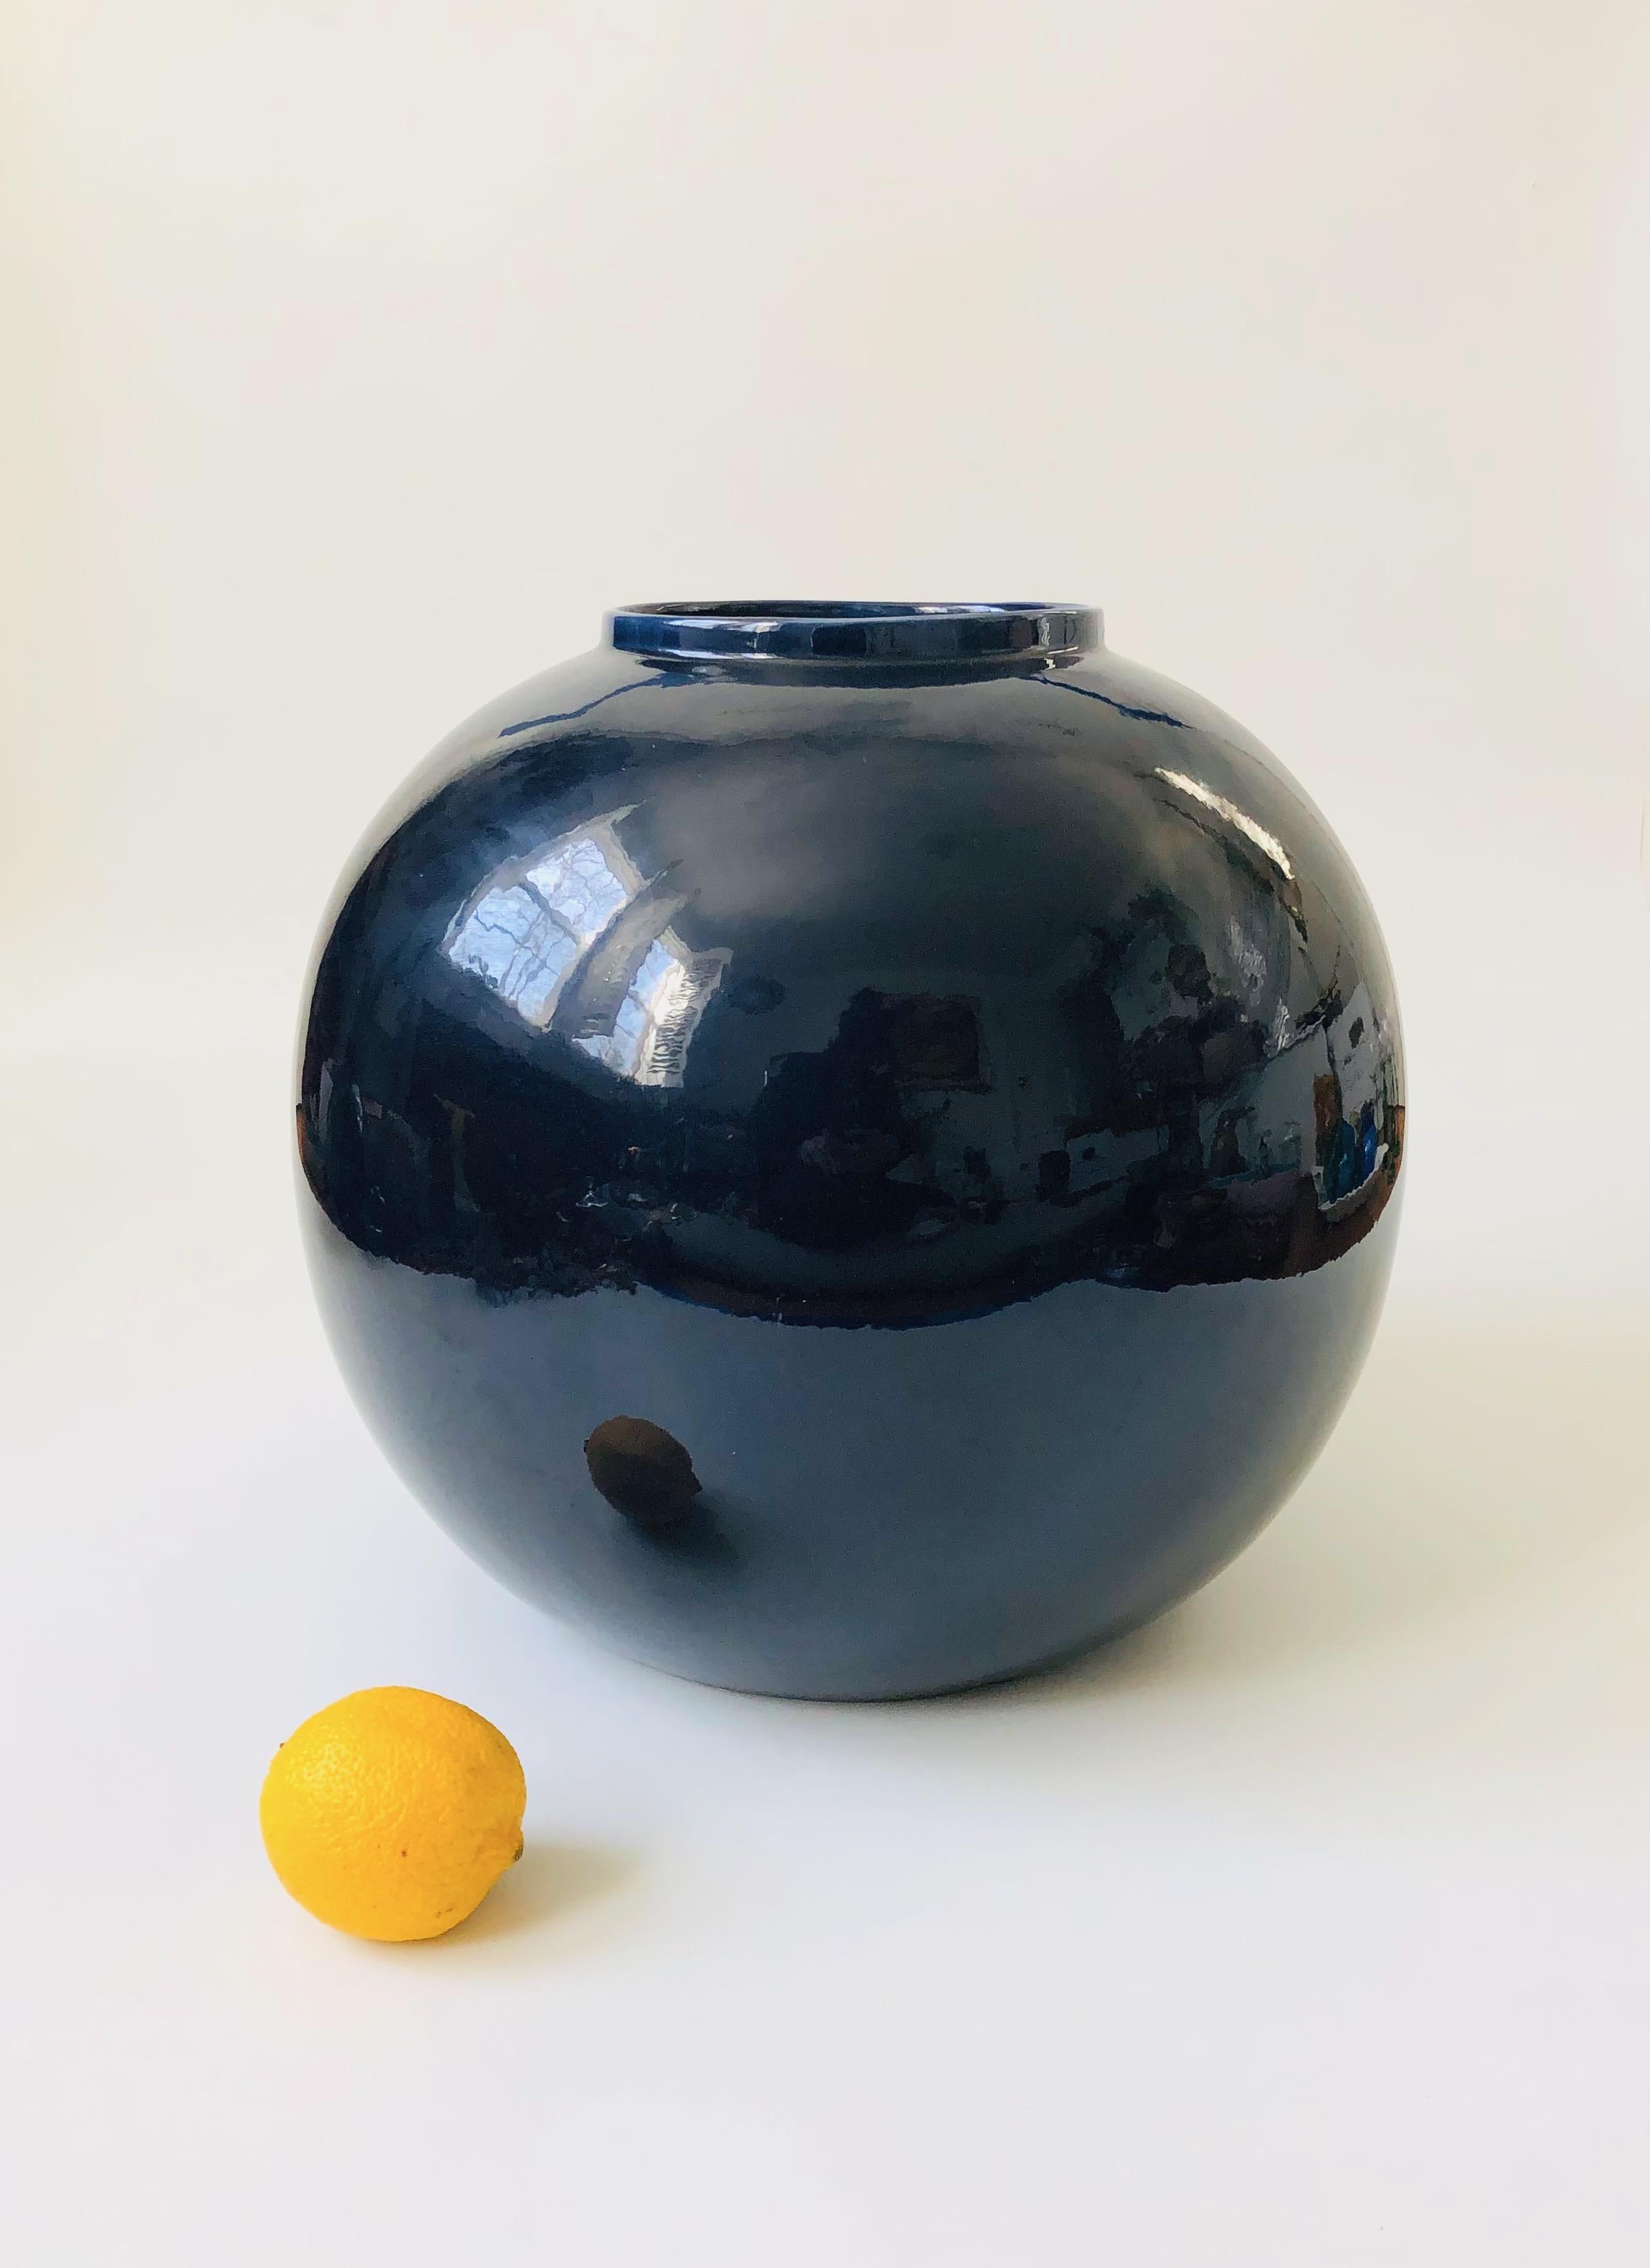 Un très grand vase sphérique en céramique vintage des années 80. Finition bleu foncé très brillante dans une forme simple et moderne. Marquée sur la base par Jaru et datée de 1981. Peut être utilisé comme vase de sol.
 